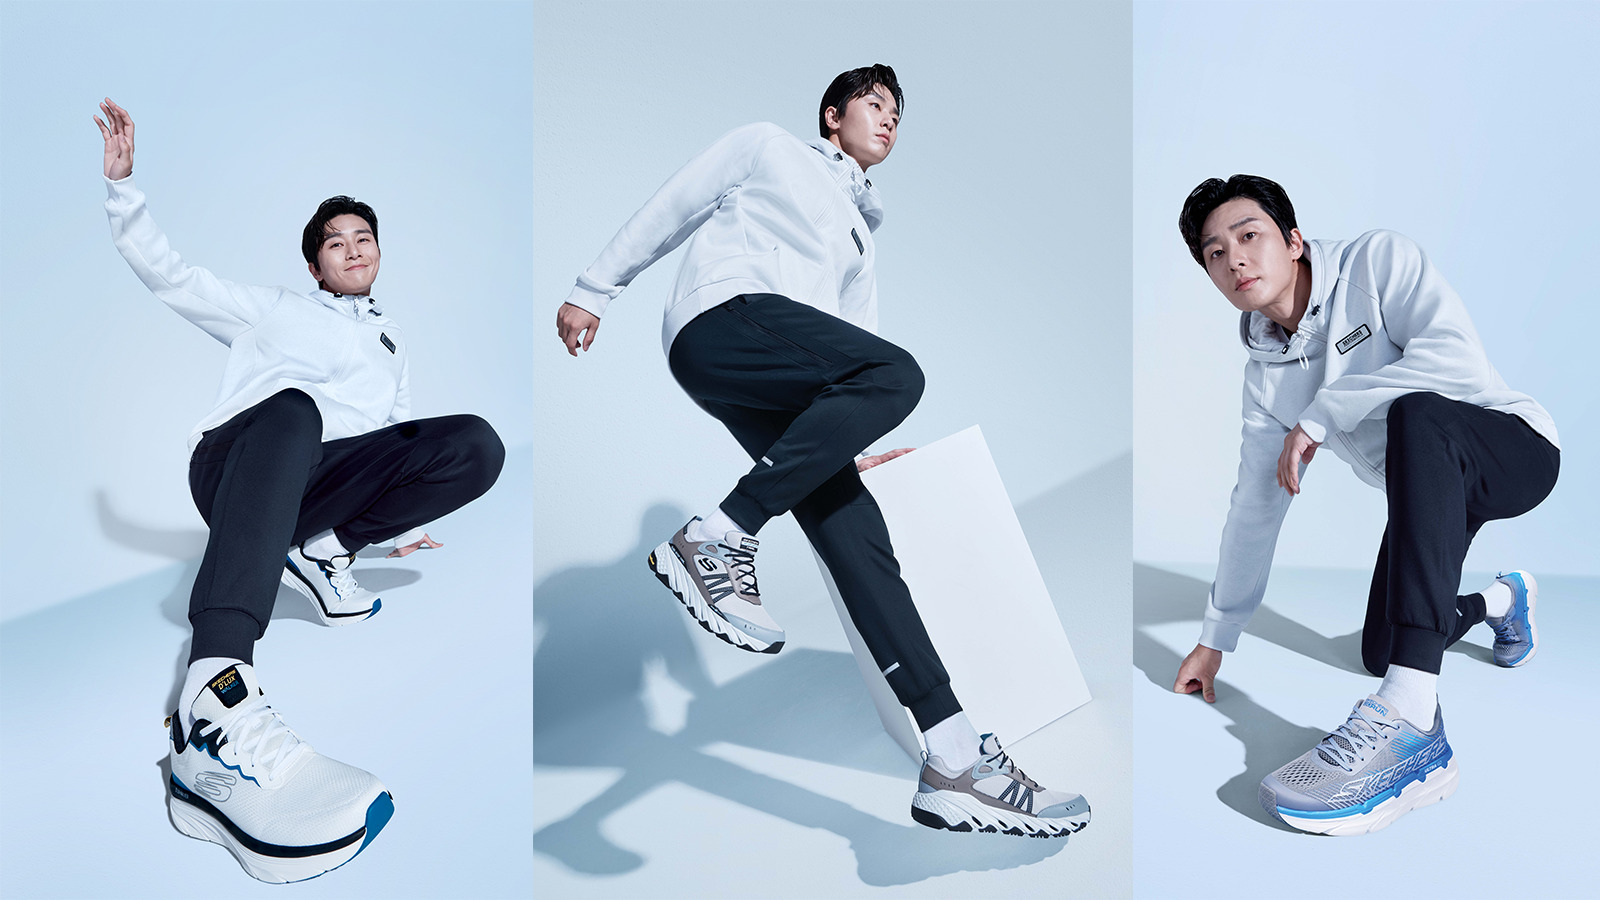 Park Seo Joon vừa được bổ nhiệm làm Đại sứ thương hiệu của Skechers - một nhãn hàng thời trang thể thao hàng đầu thế giới. Anh sẽ là Đại sứ tại Việt Nam và các nước như Hong Kong, Macao, Singapore...